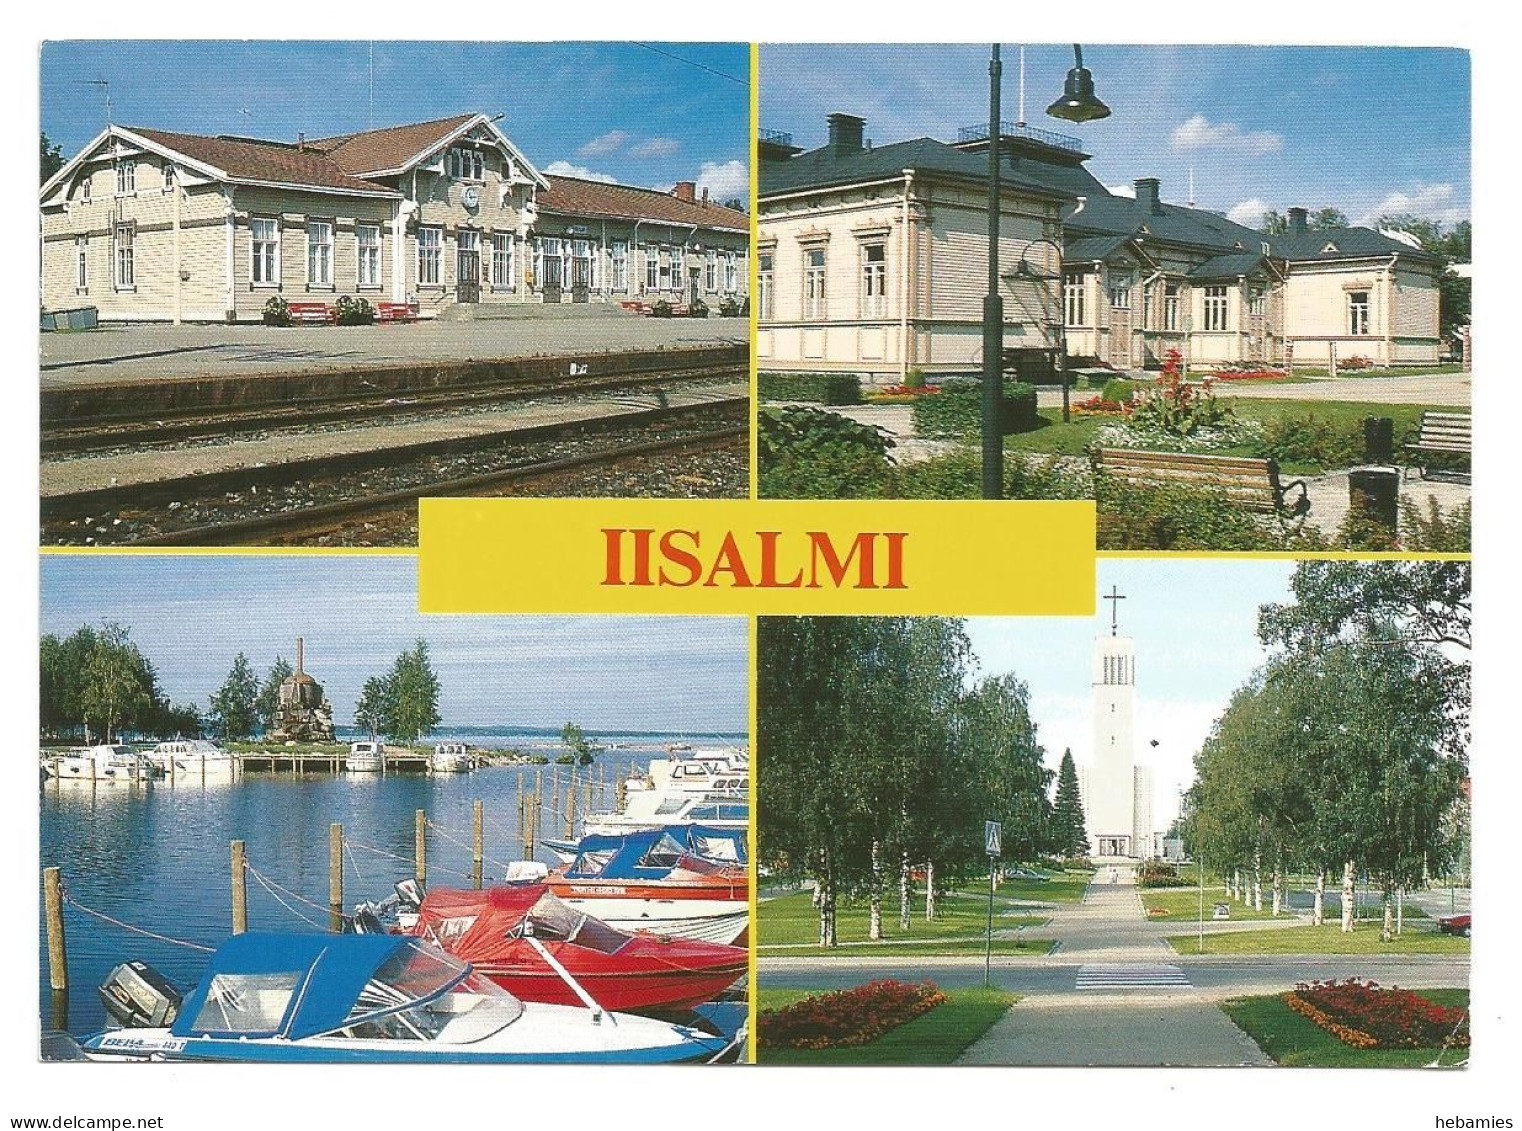 IISALMI - FINLAND - Finnland